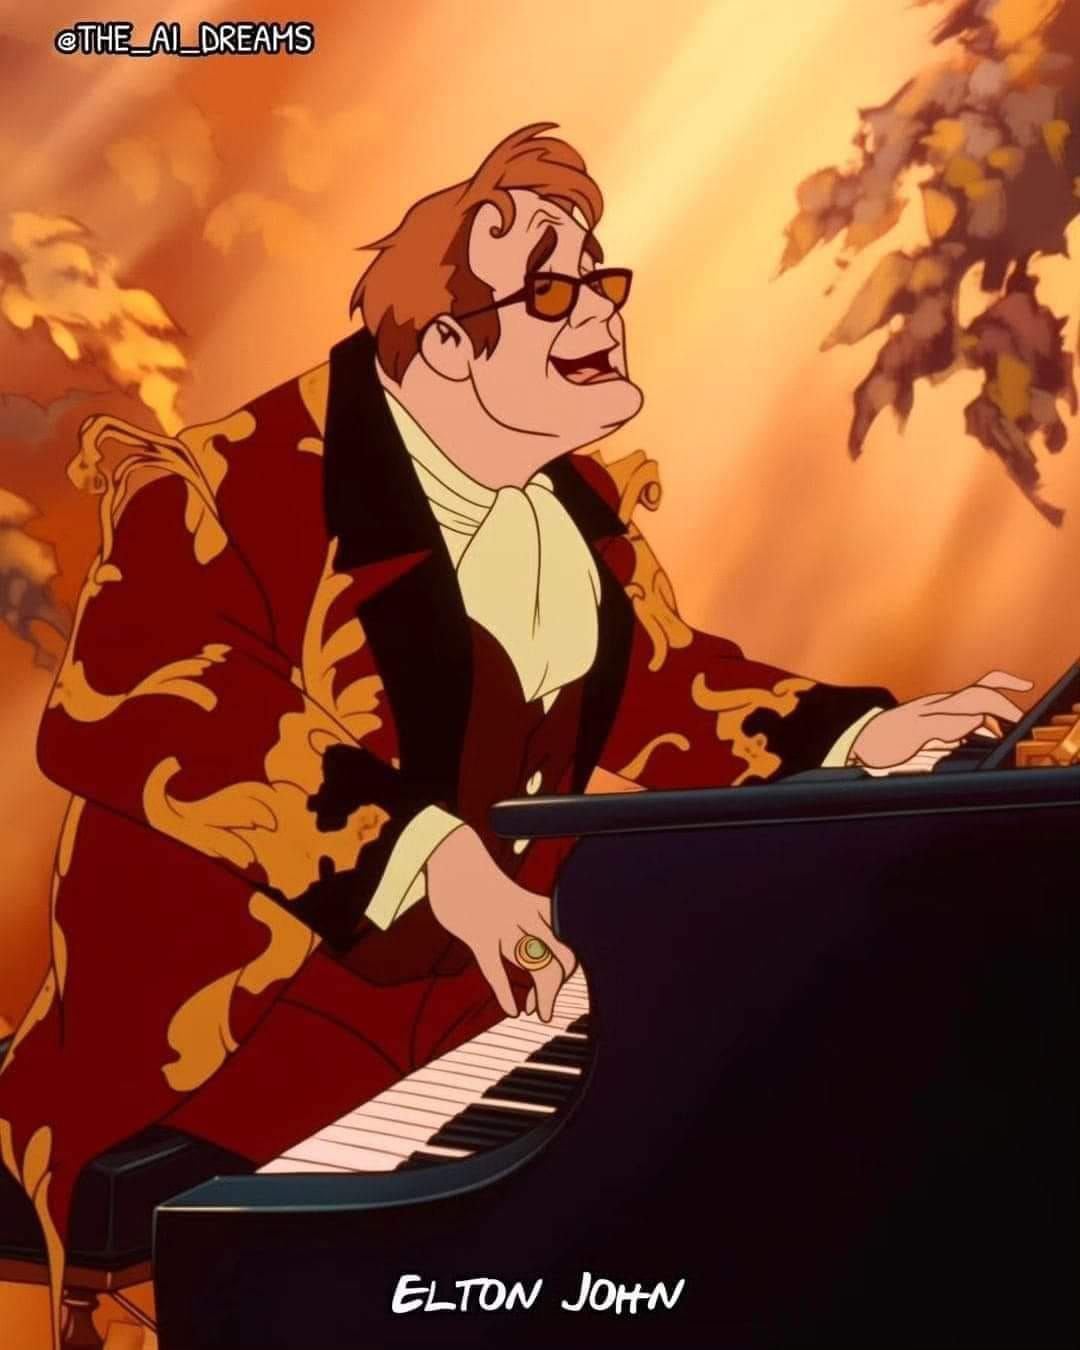 Así se vería Elton John en estilo Disney según una IA